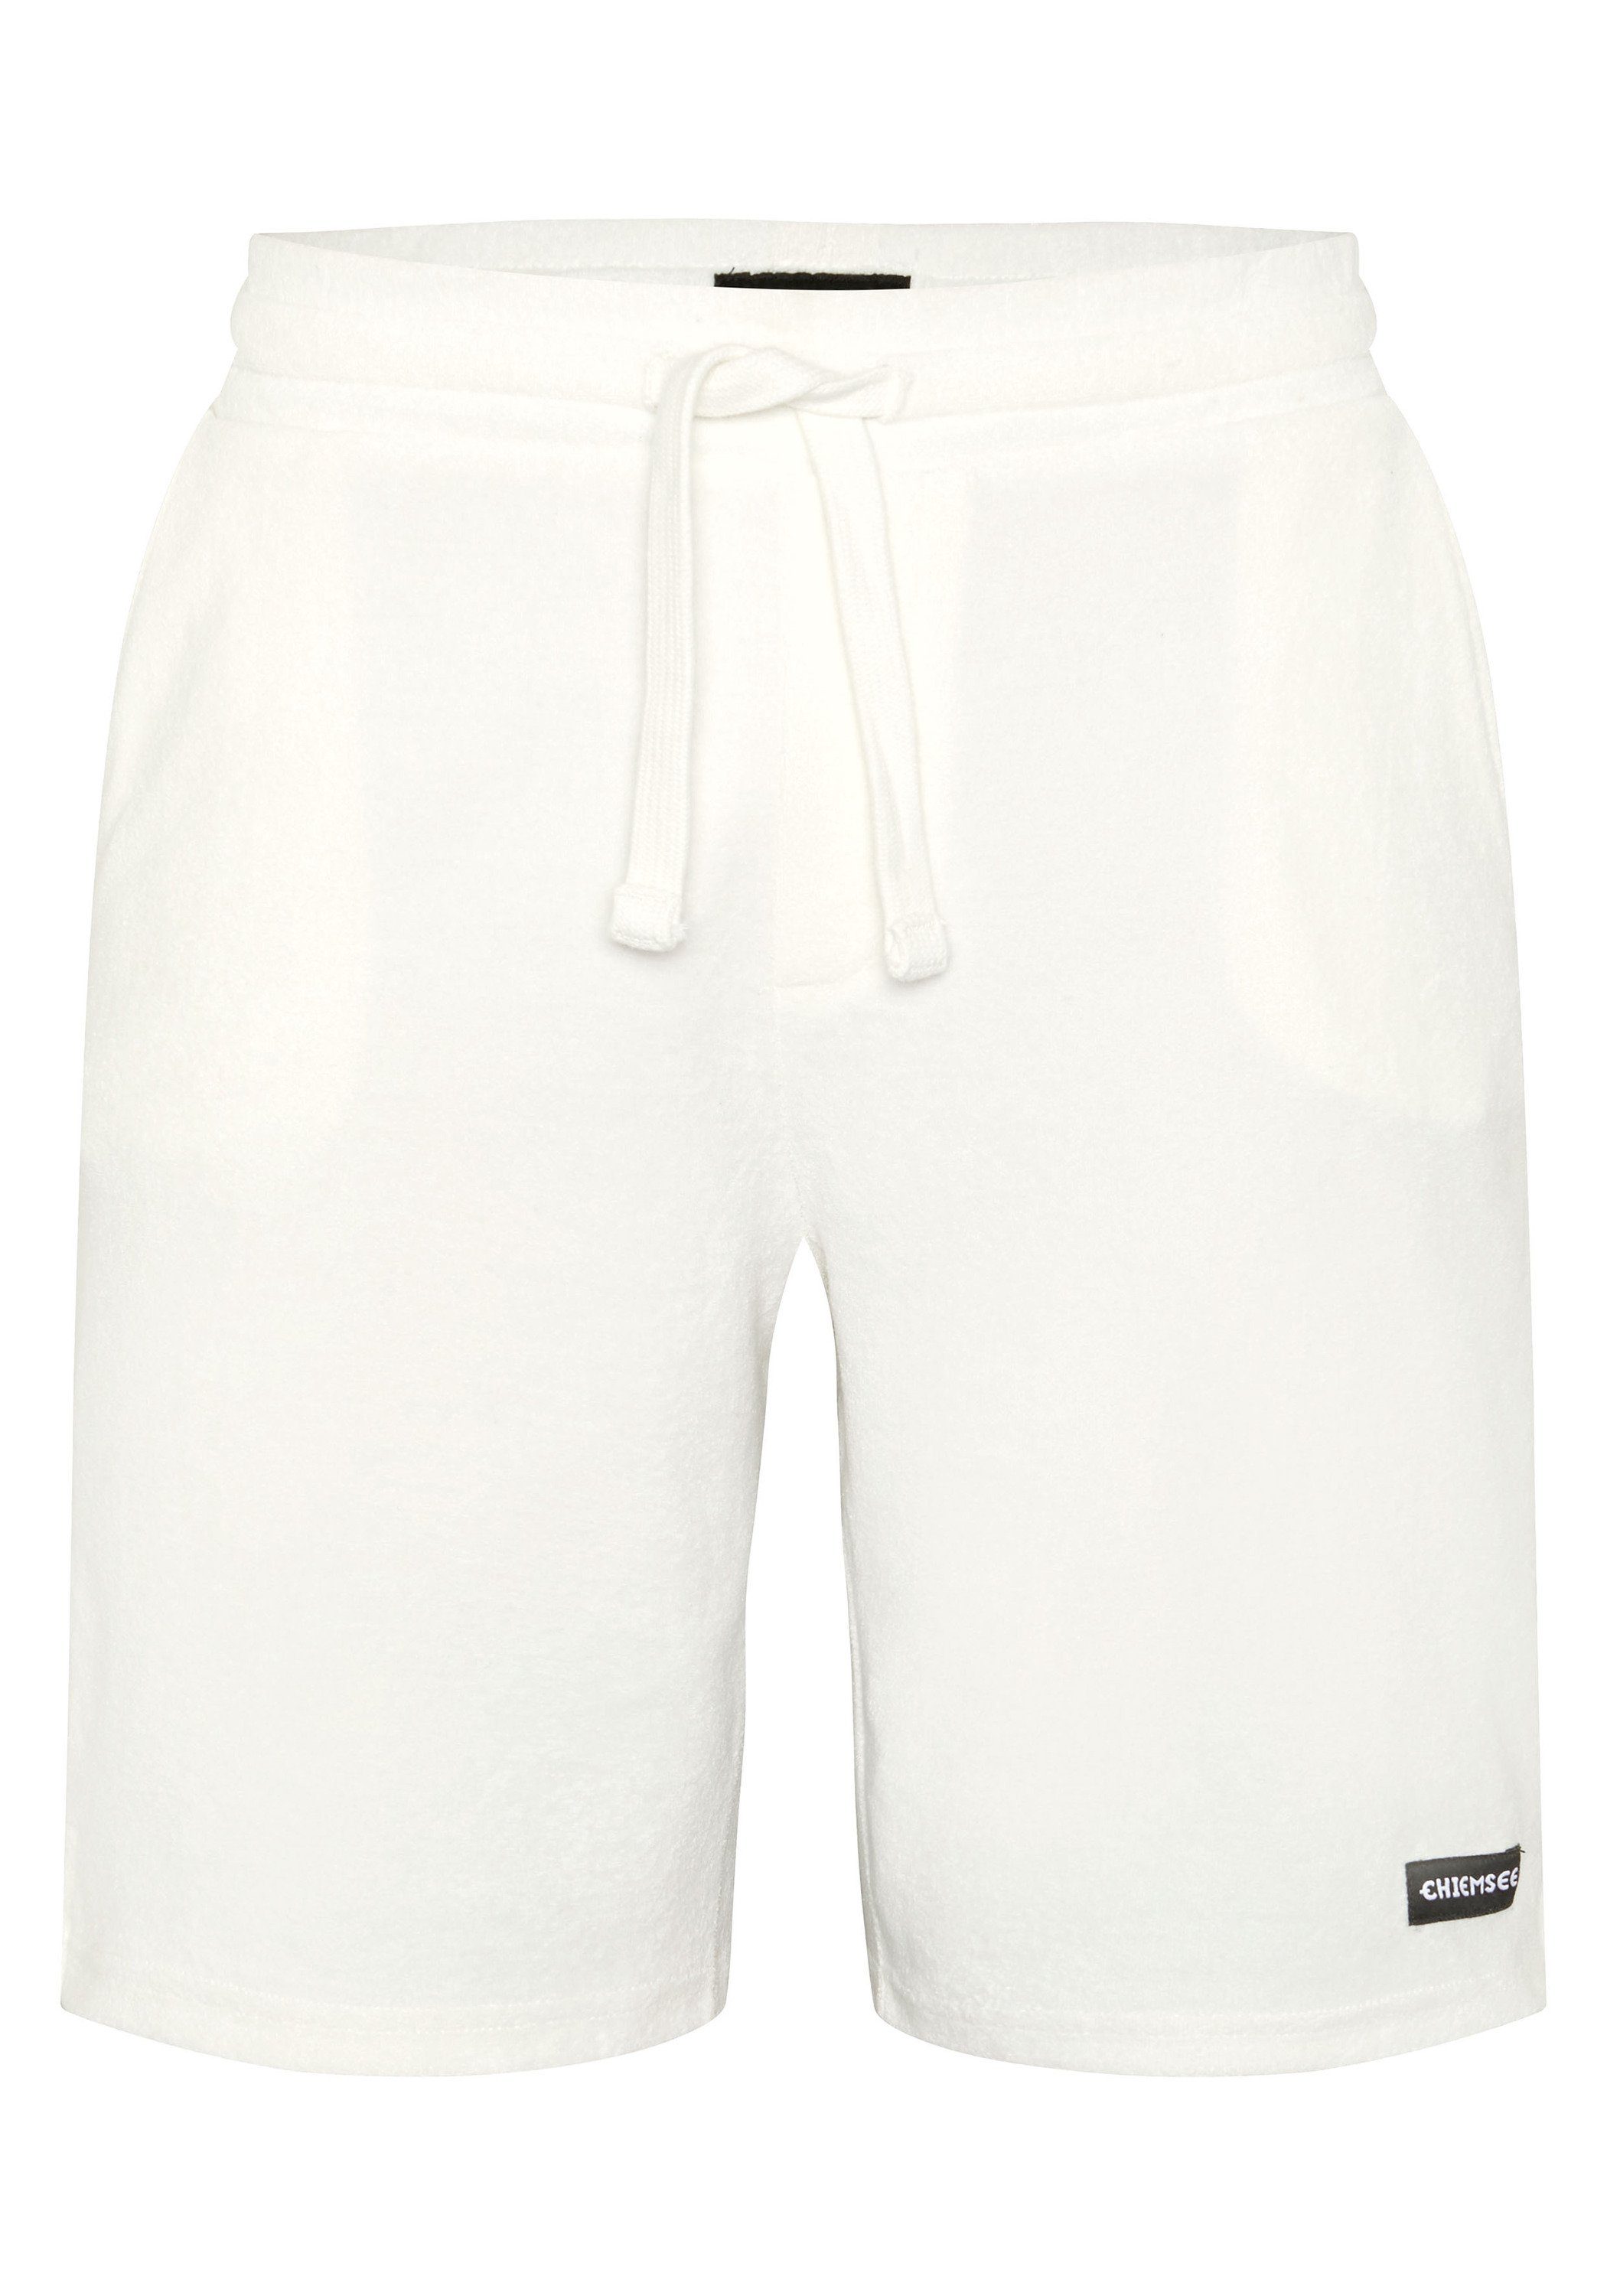 Chiemsee Sweatshorts Shorts aus Baumwollmix 11-4202 Star 1 White